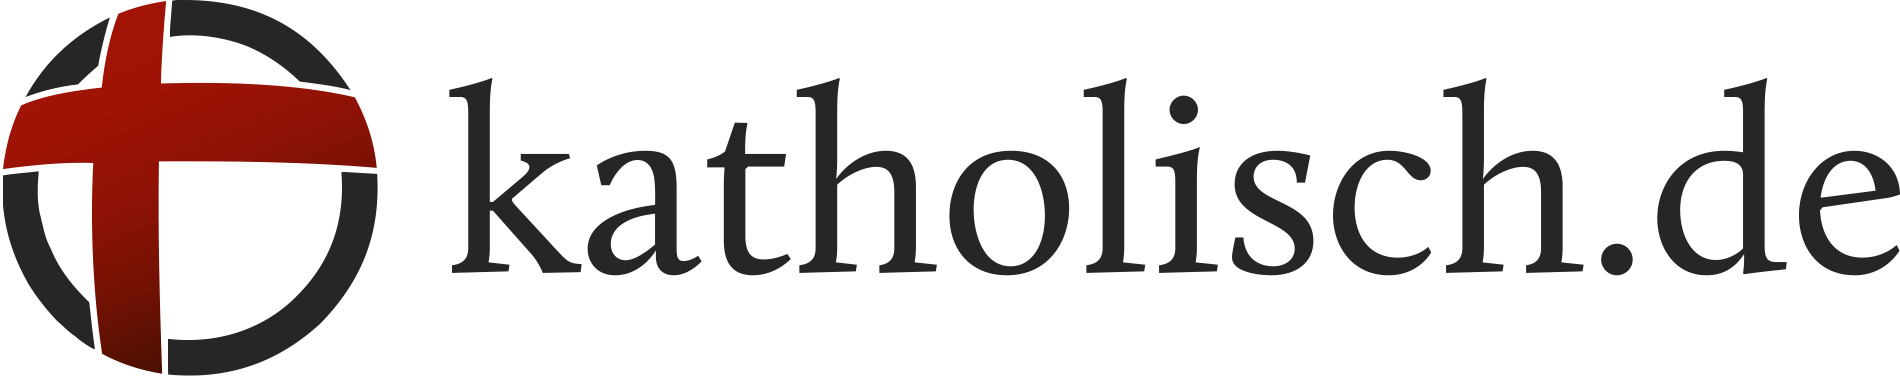 katholisch.de, die Digitalmarke der katholischen Kirche